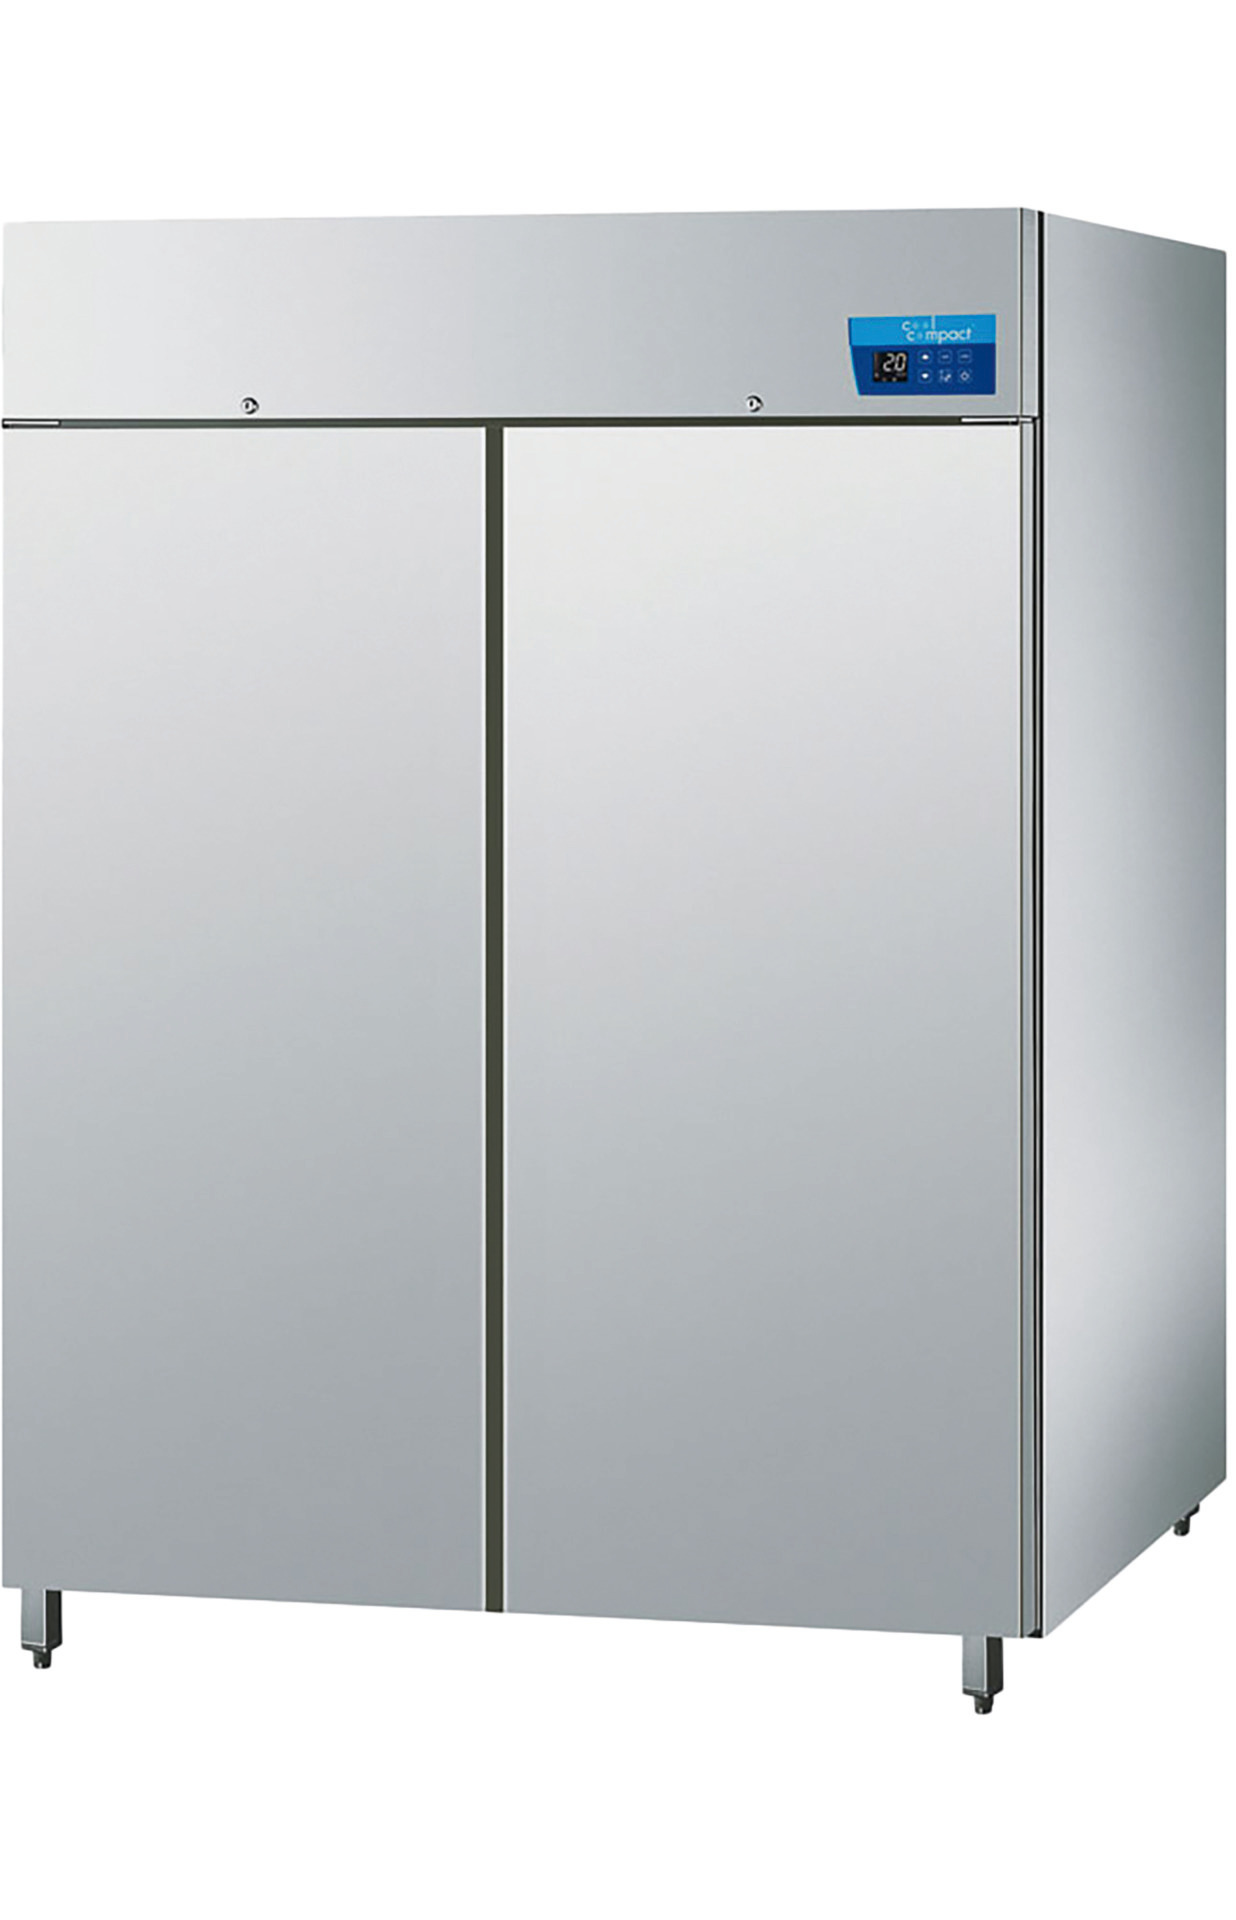 Umluft-Kühlschrank 2 Türen je  22 x GN 2/1 / zentralgekühlt